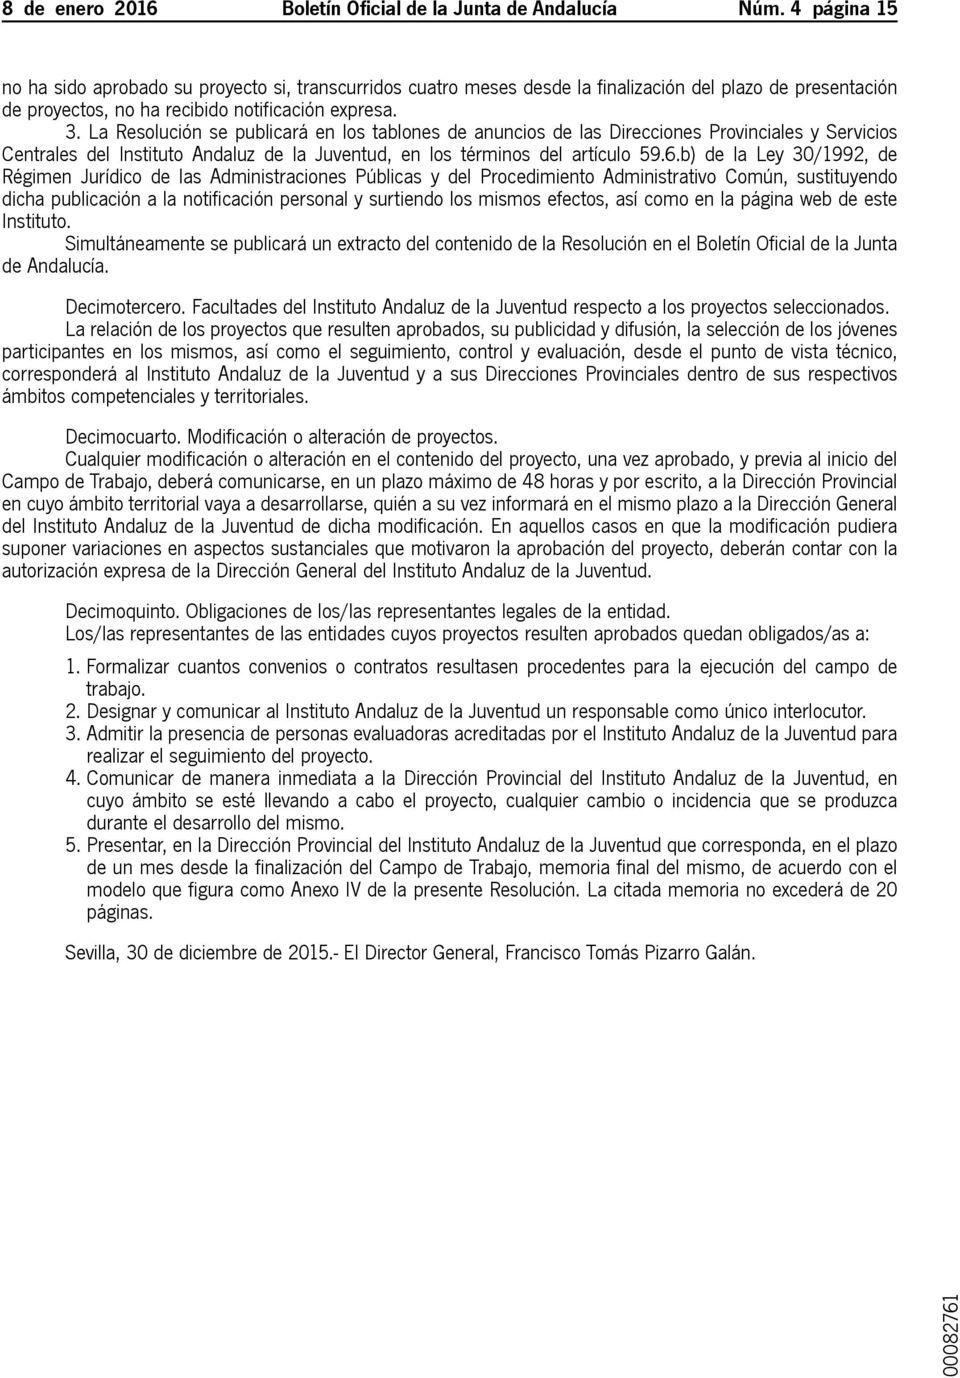 La Resolución se publicará en los tablones de anuncios de las Direcciones Provinciales y Servicios Centrales del Instituto Andaluz de la Juventud, en los términos del artículo 59.6.